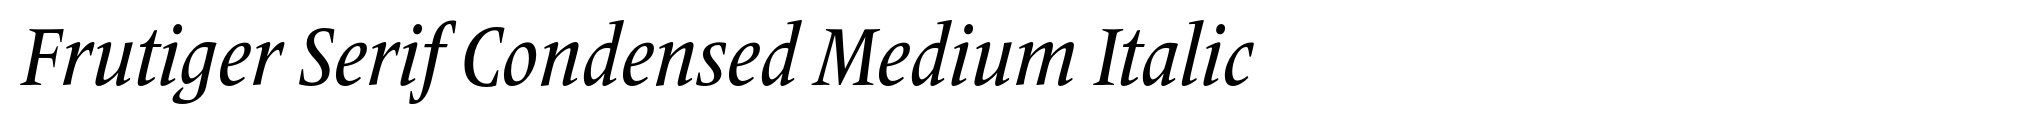 Frutiger Serif Condensed Medium Italic image